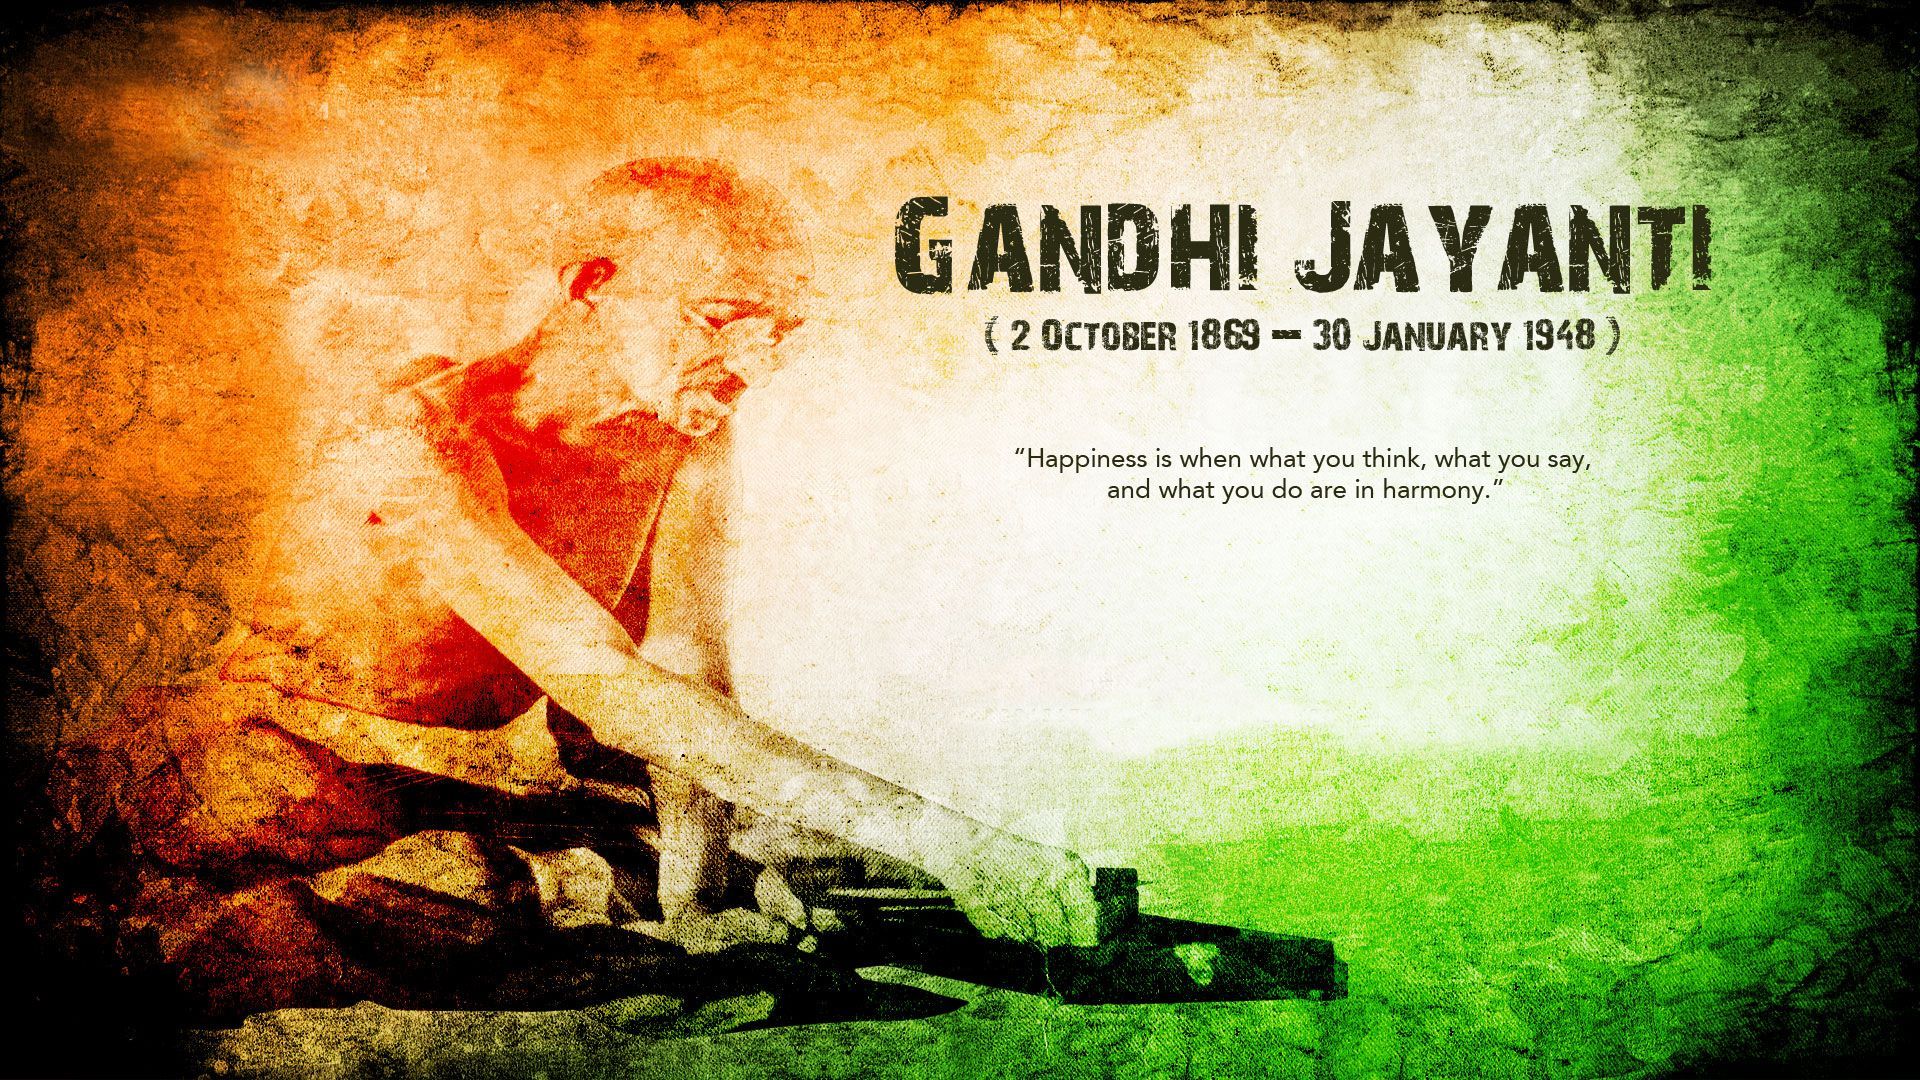 gandhi jayanti HD wallpaper. Gandhi jayanti image, Gandhi, Spirit of truth